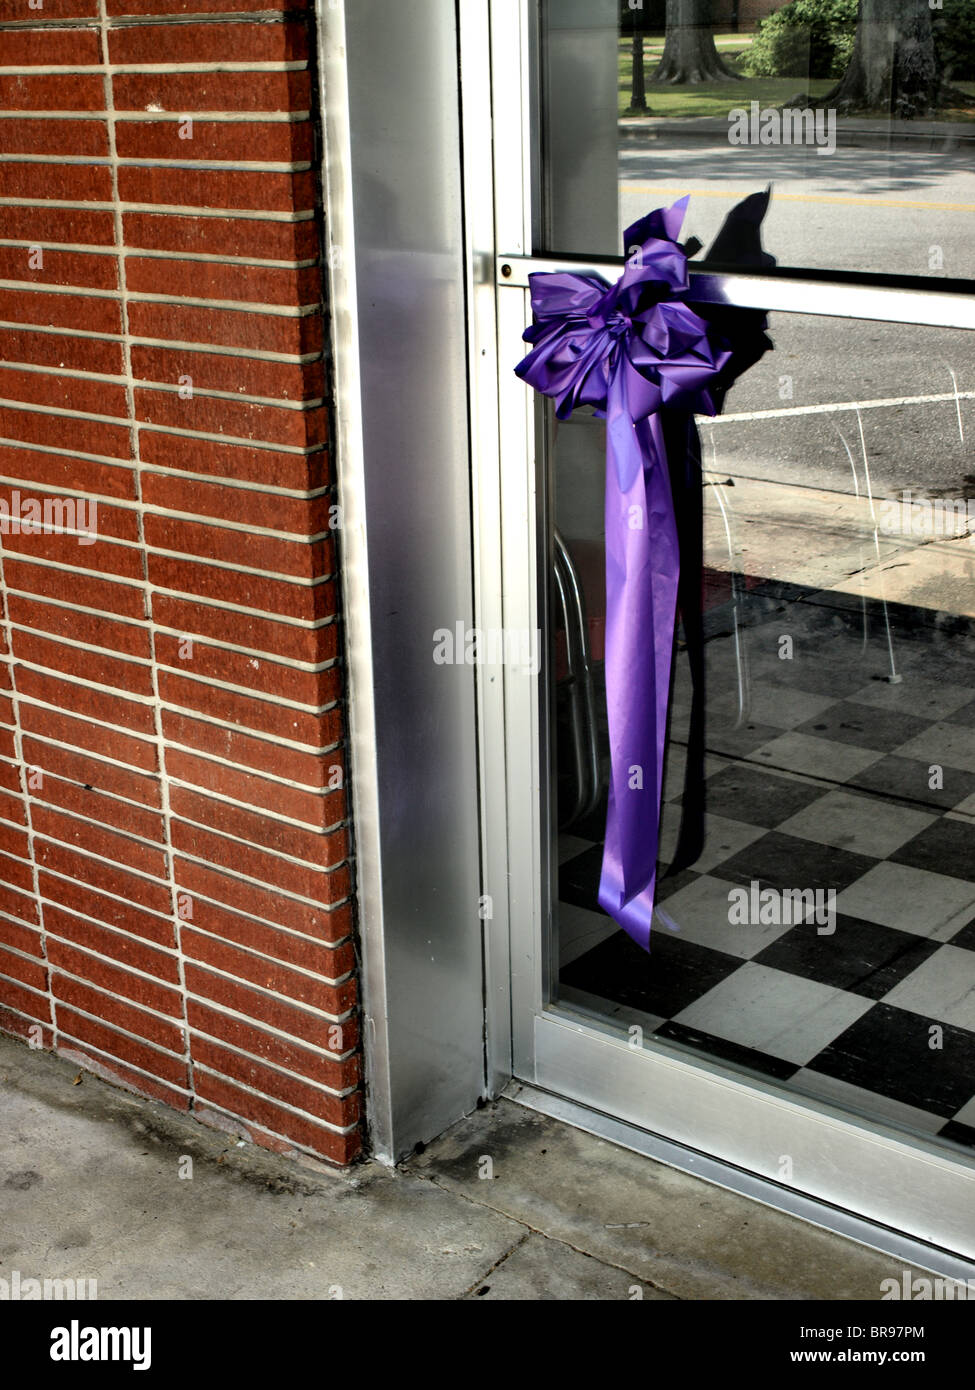 Grand arc violet et ruban accroché sur une porte de verre et d'argent dans un mur de brique avec plancher à carreaux réflexions visibles Banque D'Images